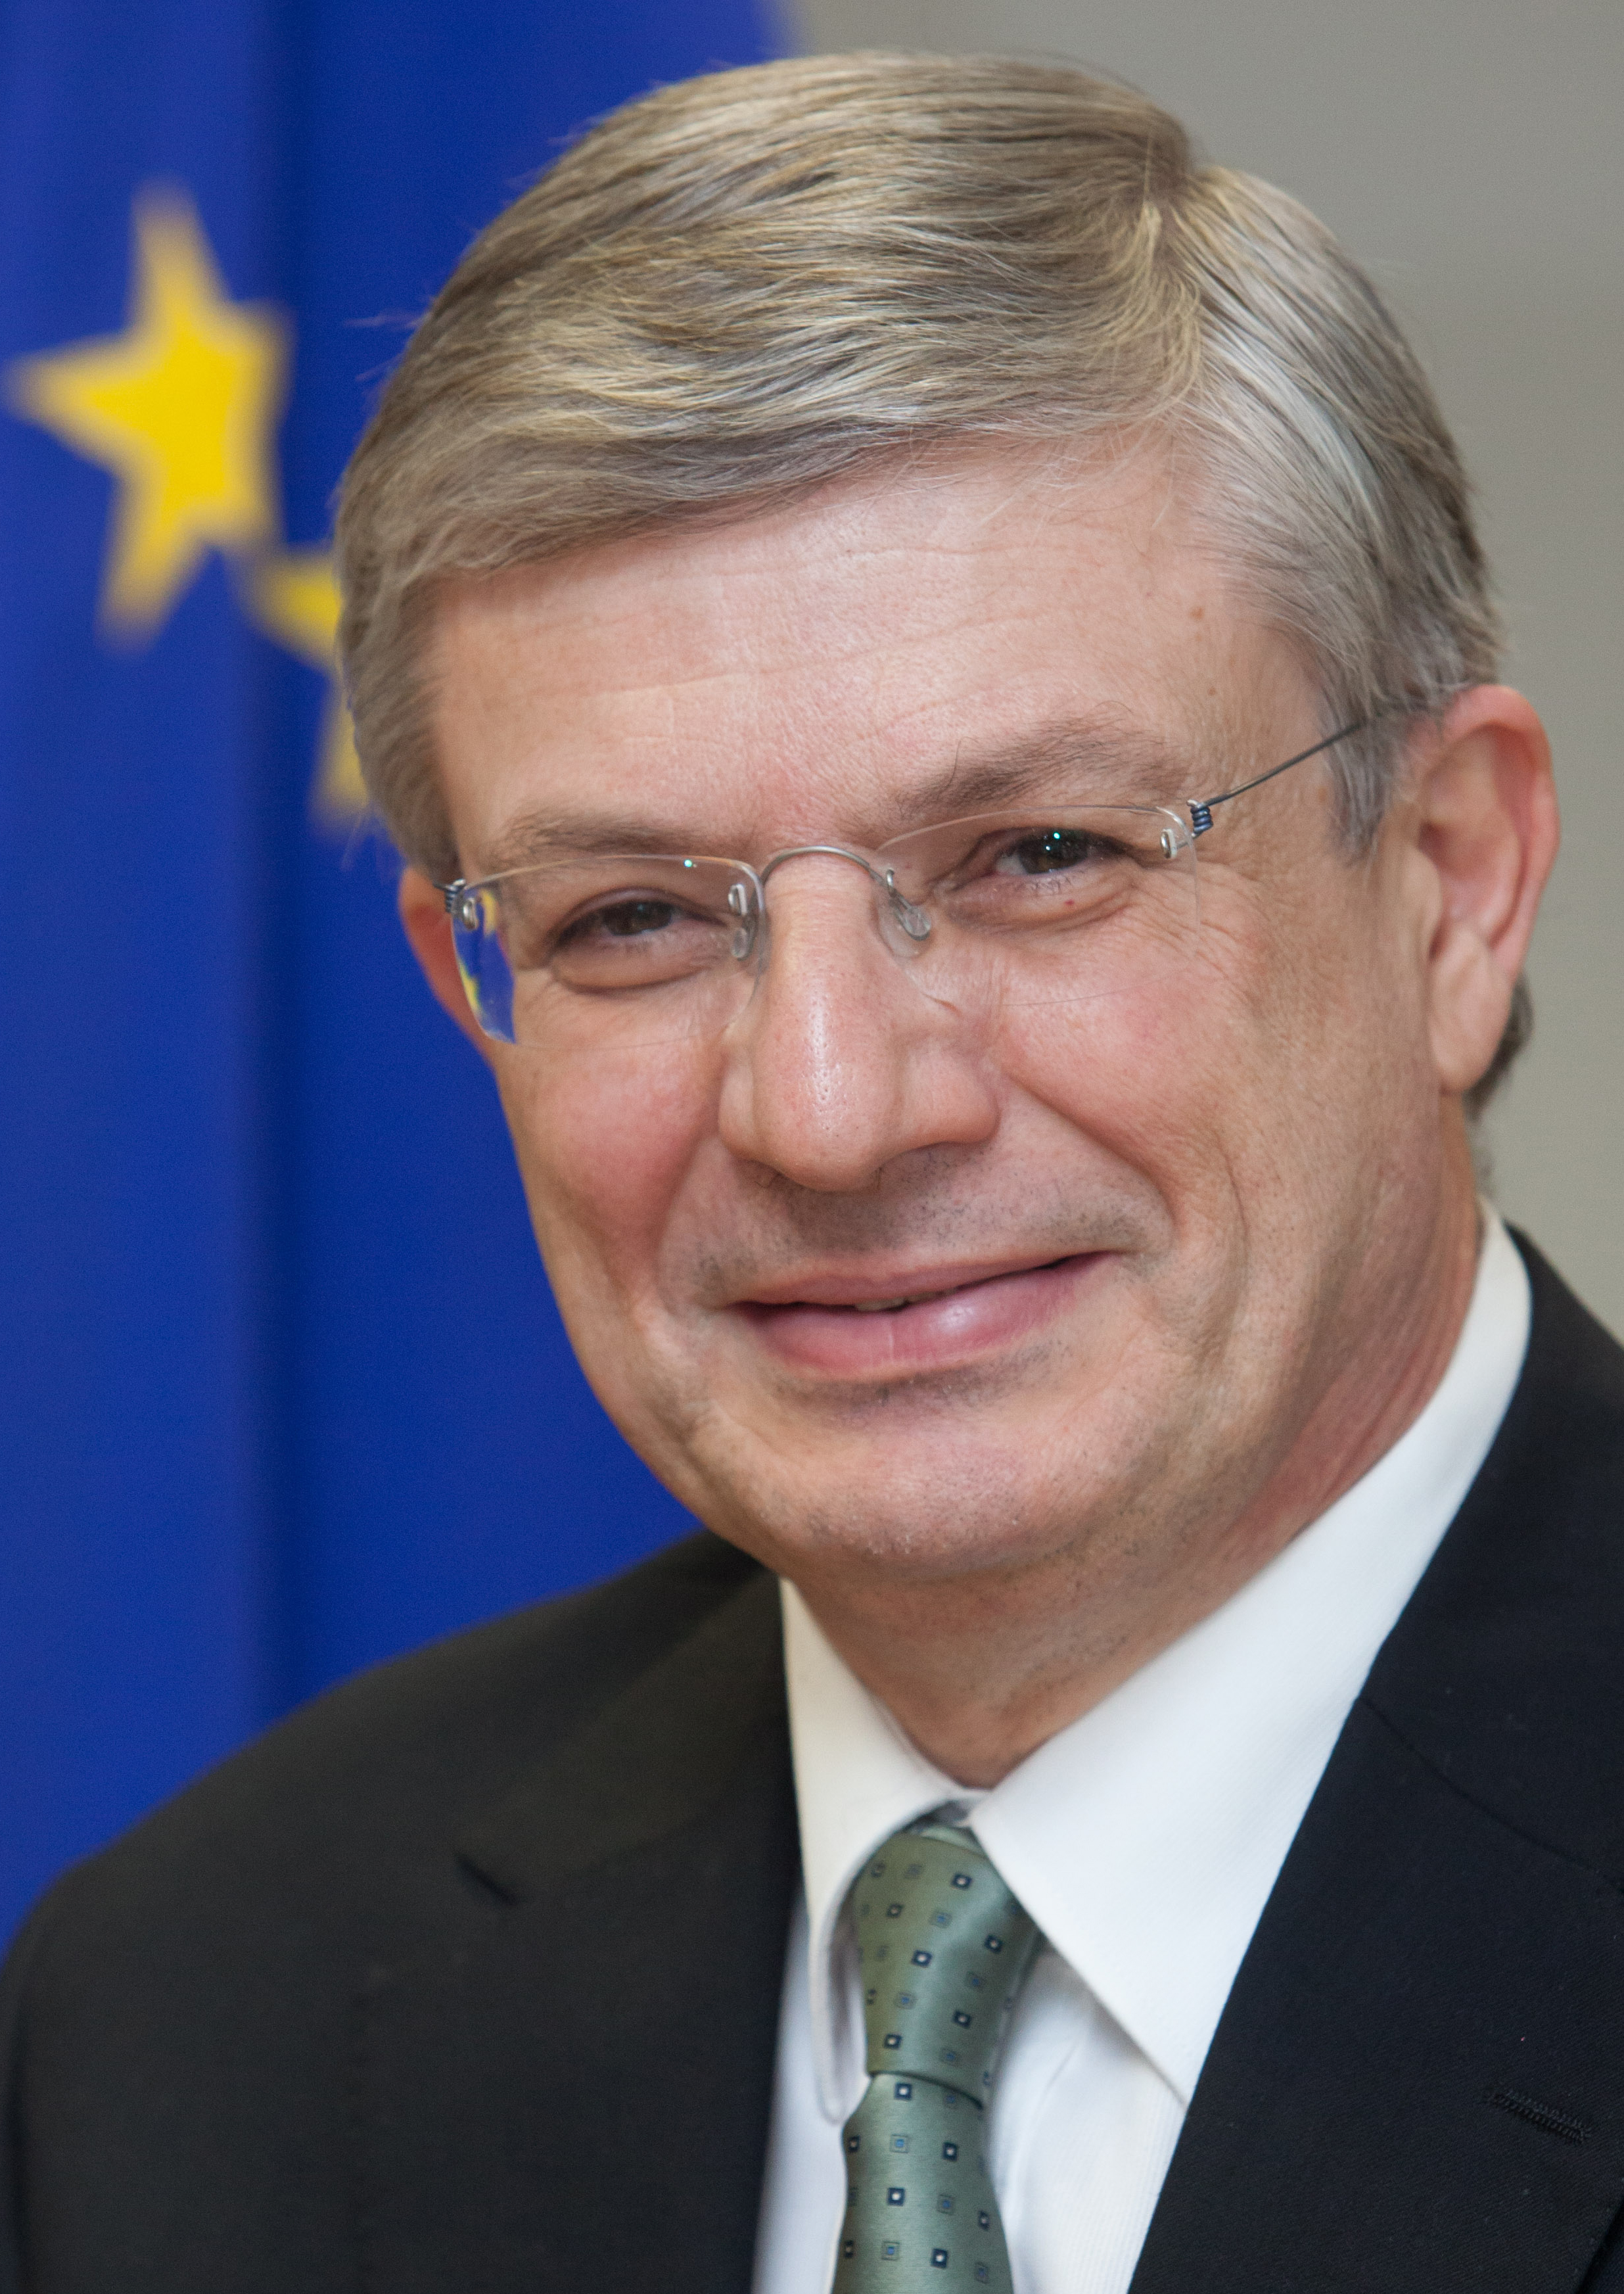 Tonio Borg, commissaire européen chargé de la santé